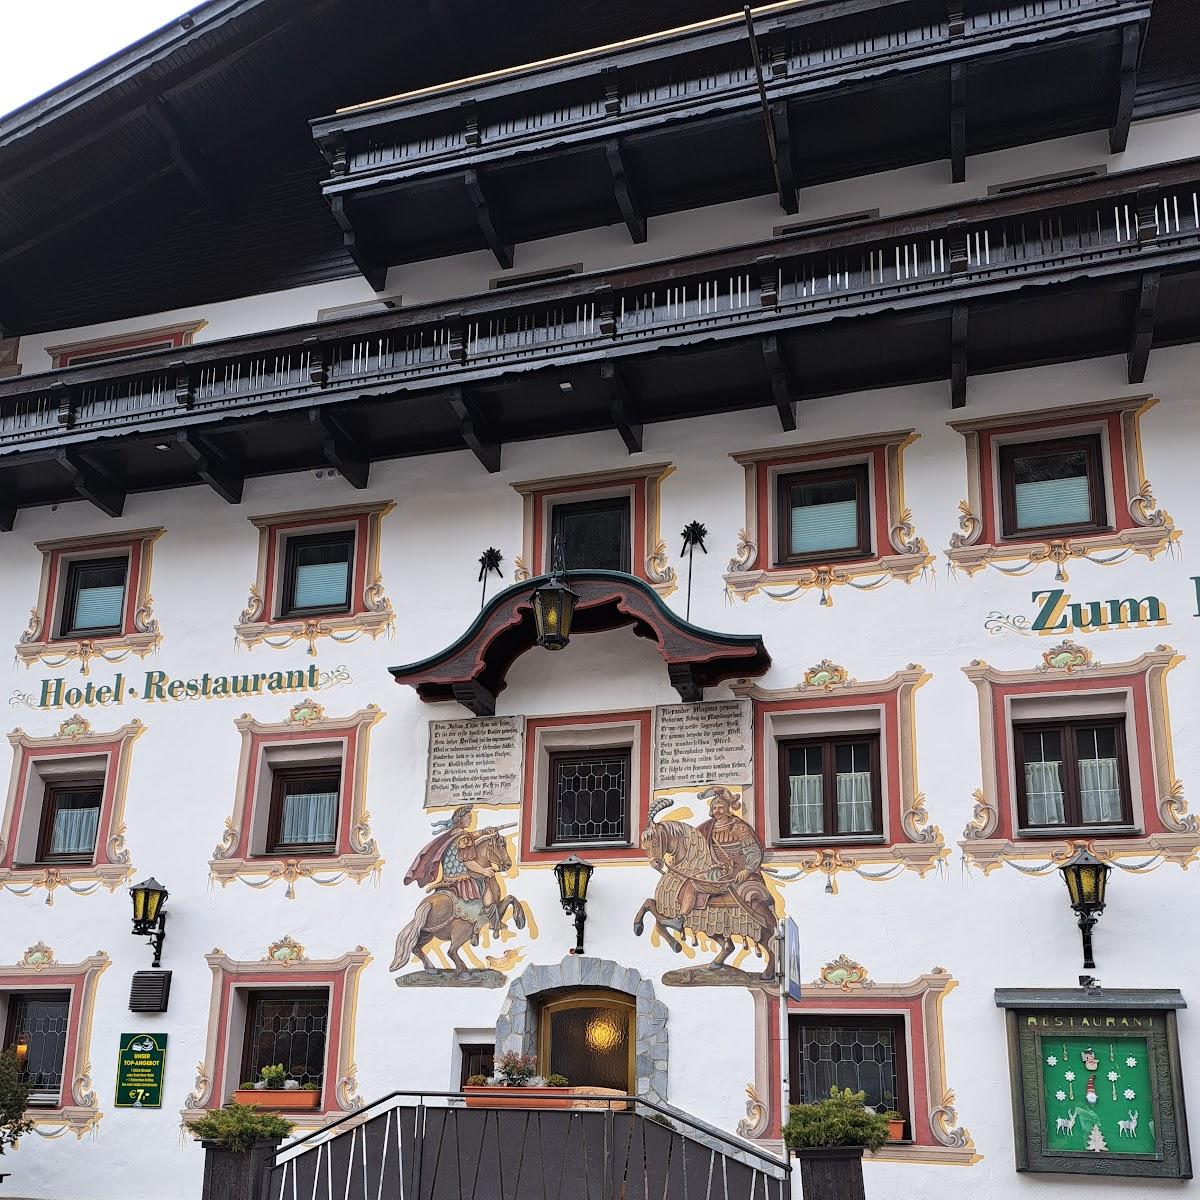 Restaurant "Hotel Zum Hirschen" in Längenfeld